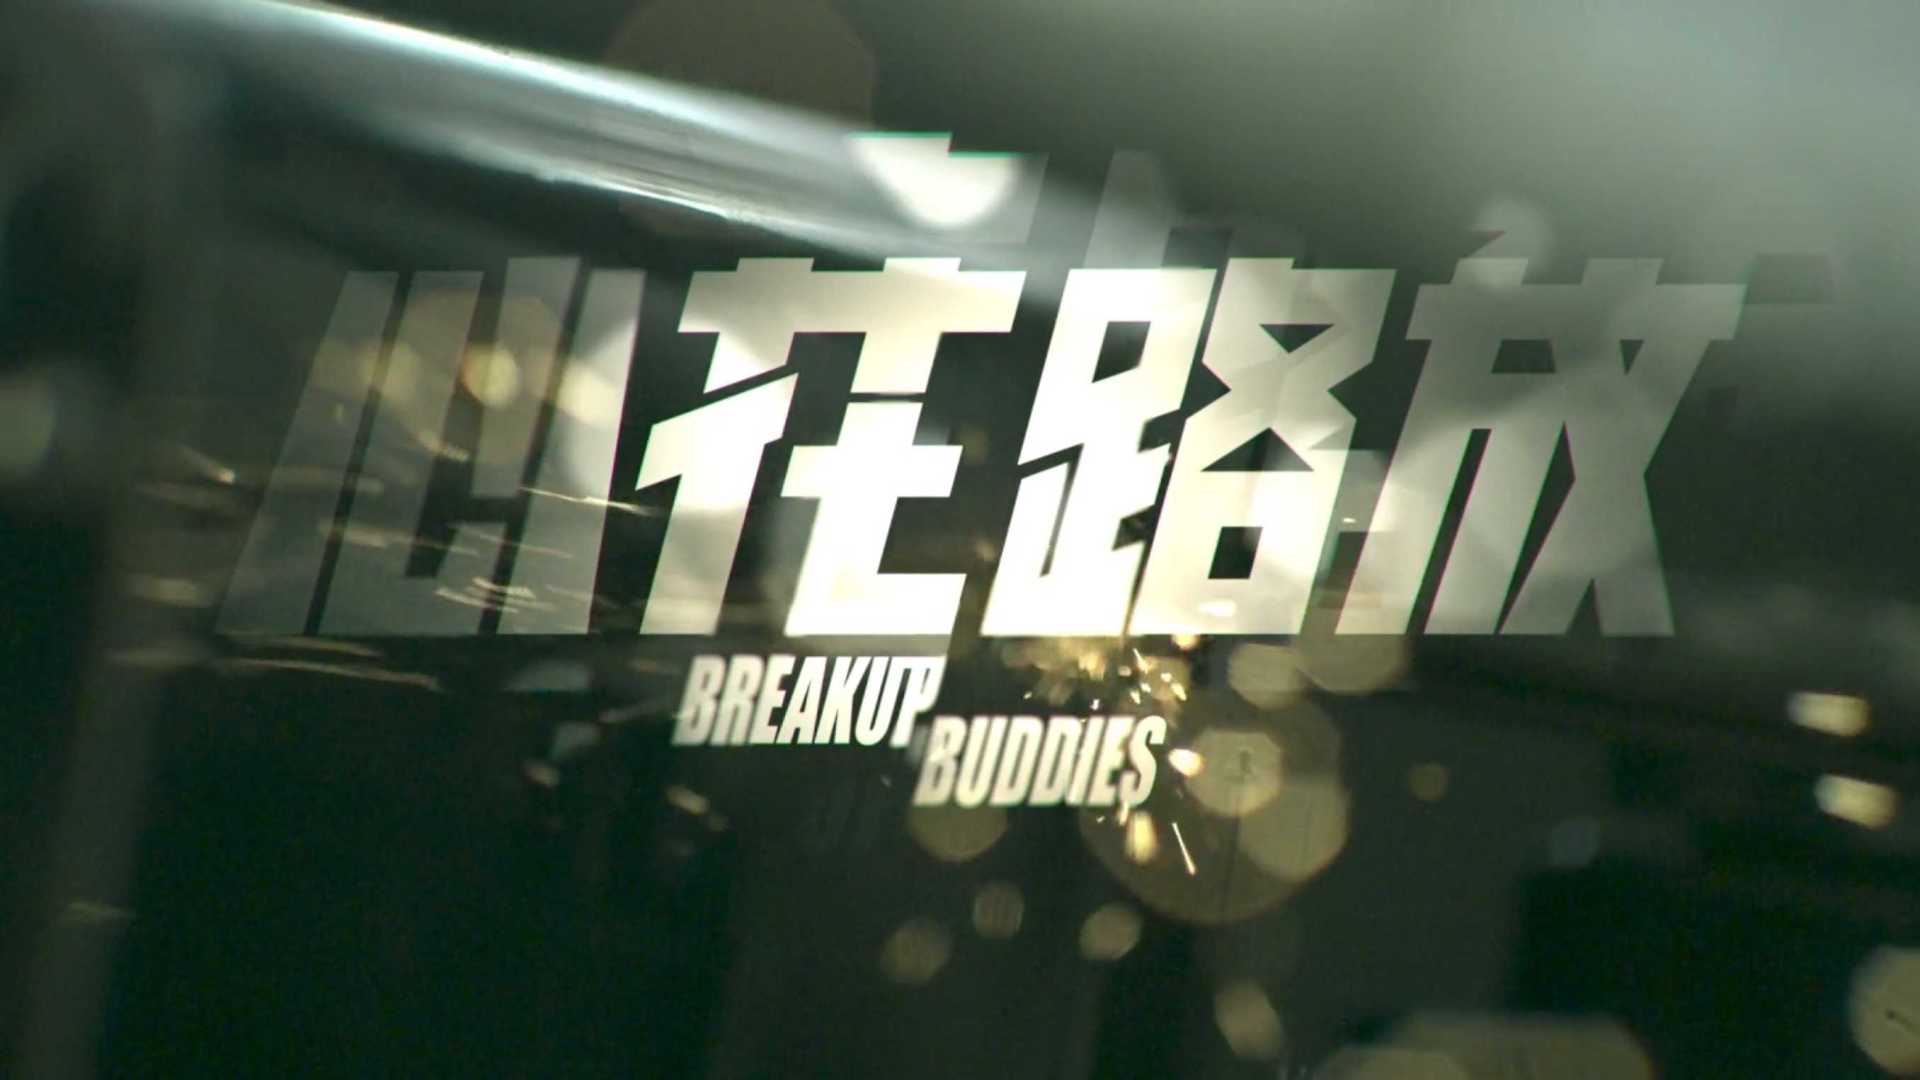 电影《心花路放》(Breakup Bodies) 片头设计